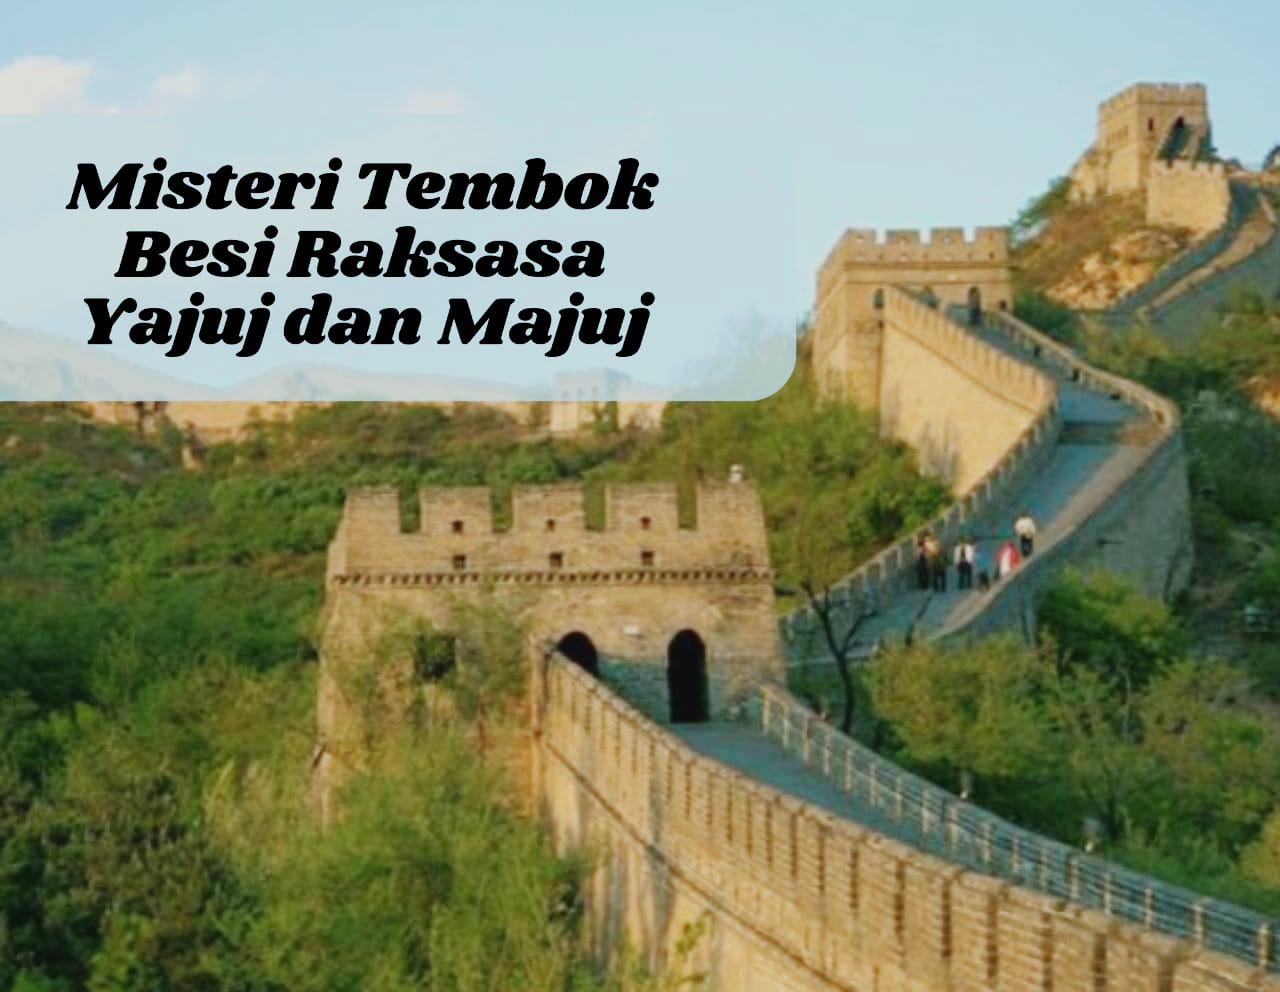 Misteri Tembok Besi Raksasa Yajuj dan Majuj, Benarkah Tembok China? Inilah Faktanya